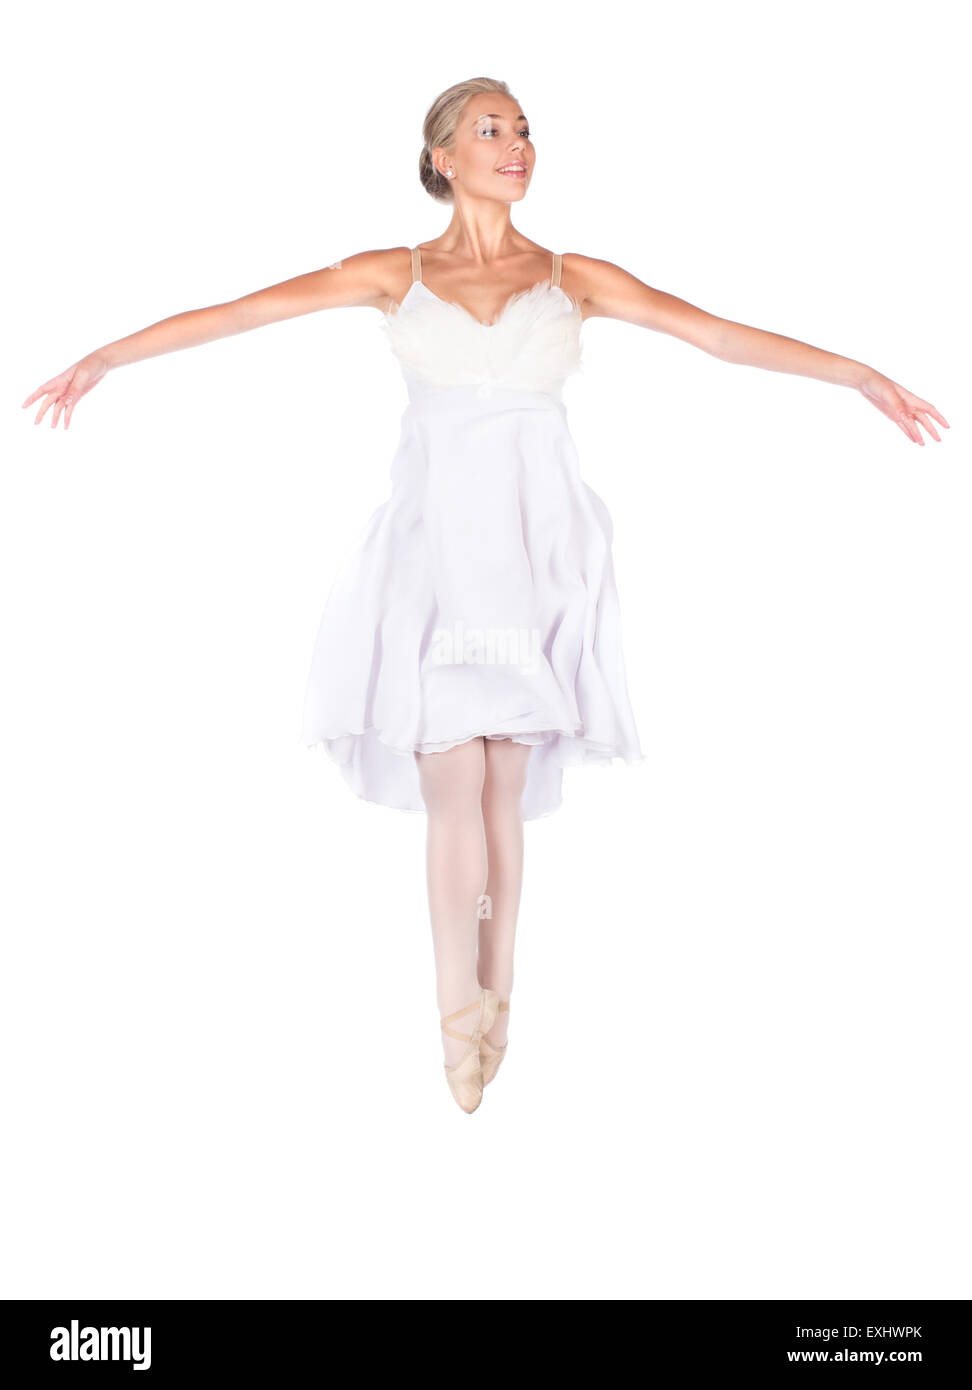 Schönen weiblichen Balletttänzer isoliert auf einem weißen Hintergrund. Ballerina trägt ein weißes Kleid gefiederten und Spitzenschuhe. Stockfoto